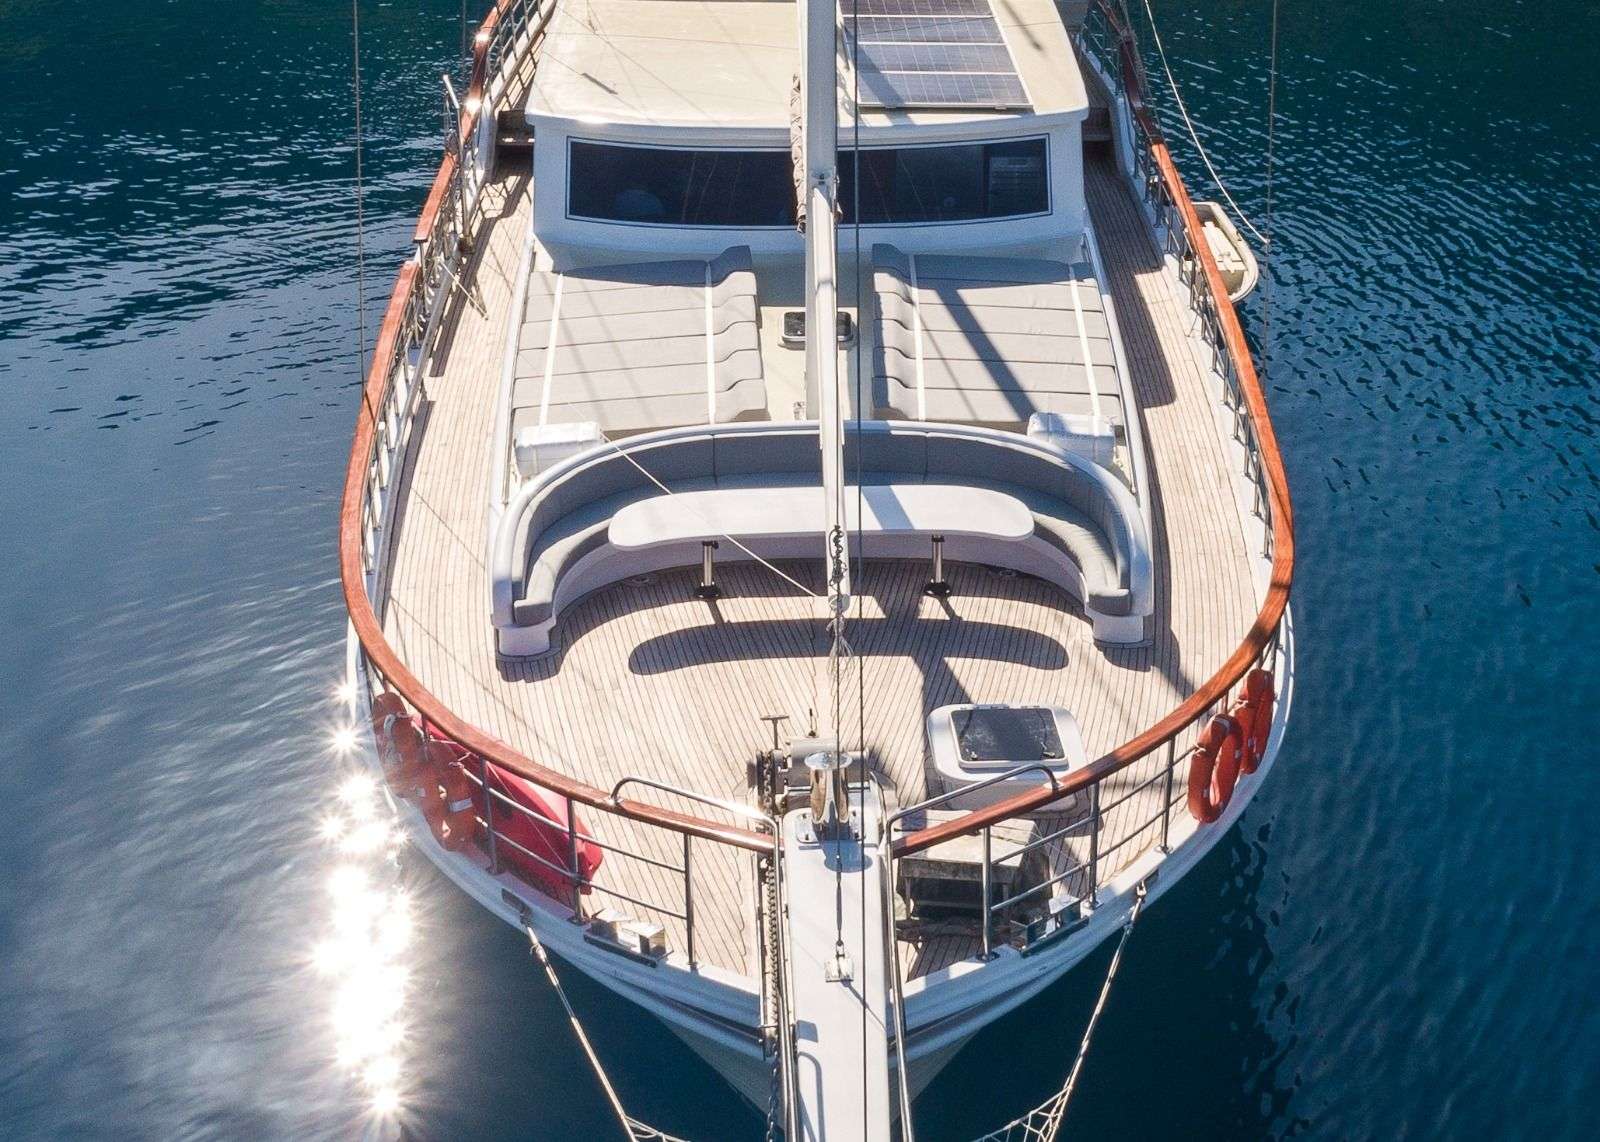 koray ege - Luxury yacht charter Turkey & Boat hire in Greece & Turkey 6